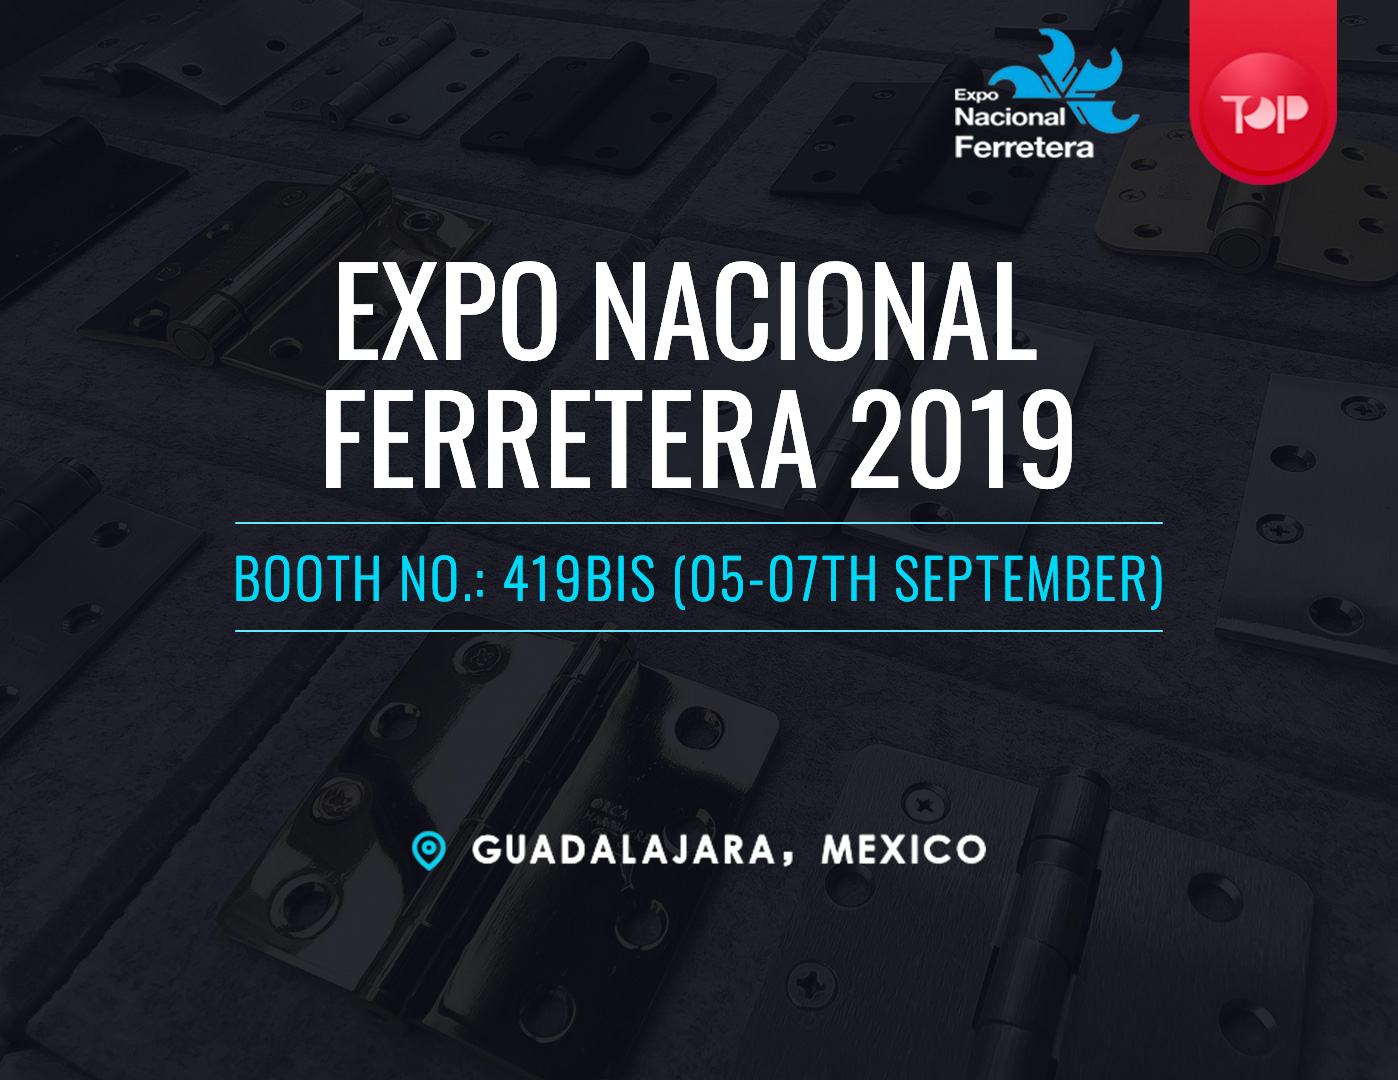 Expo Nacional Ferredera 2019